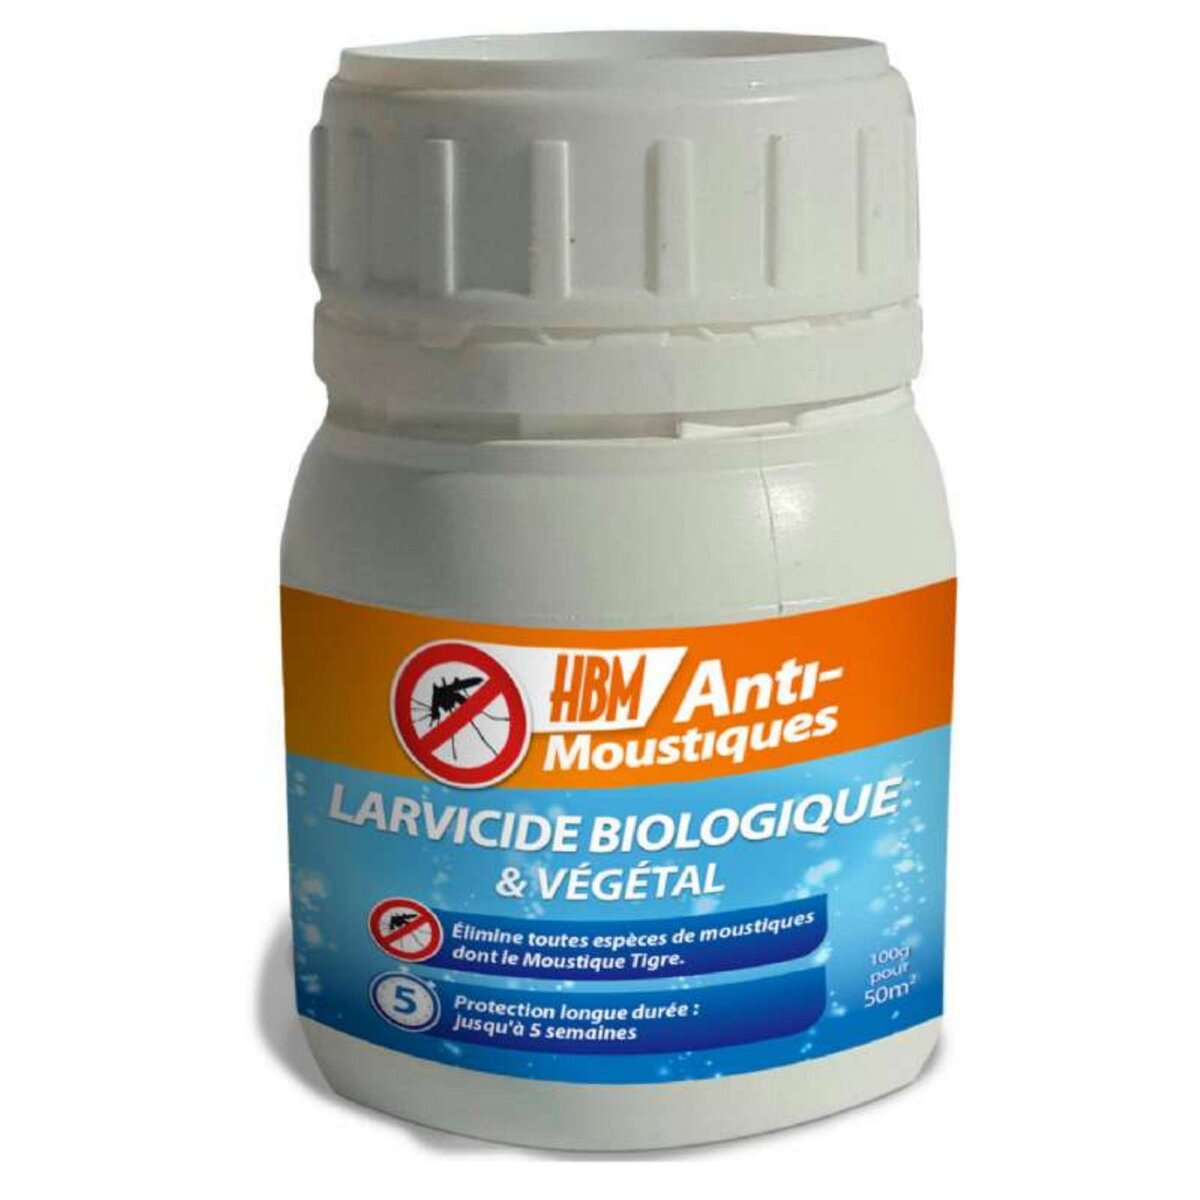 HBM Anti-Moustiques Larvicide biologique anti-moustiques Hbm 100g